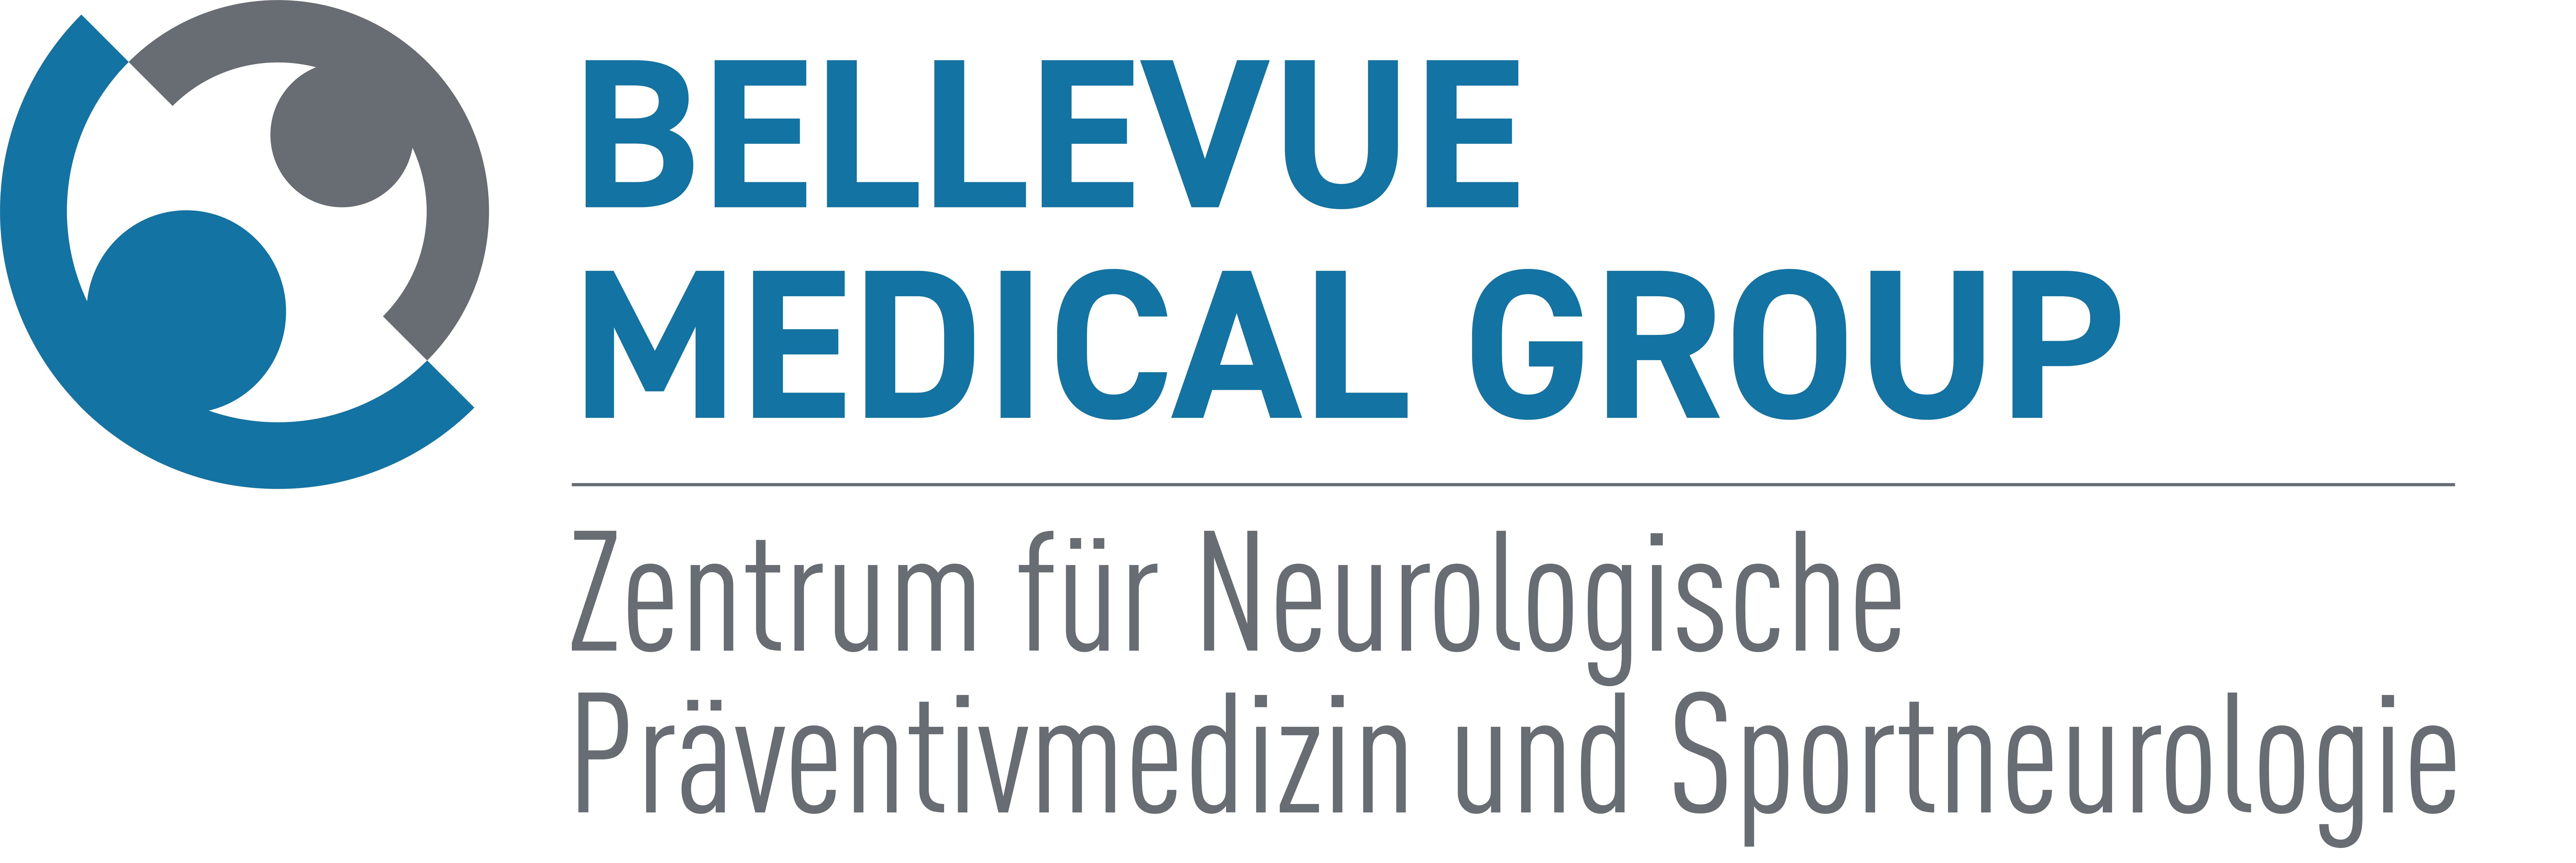 Center for Neurological Preventive Medicine and Sports Neurology